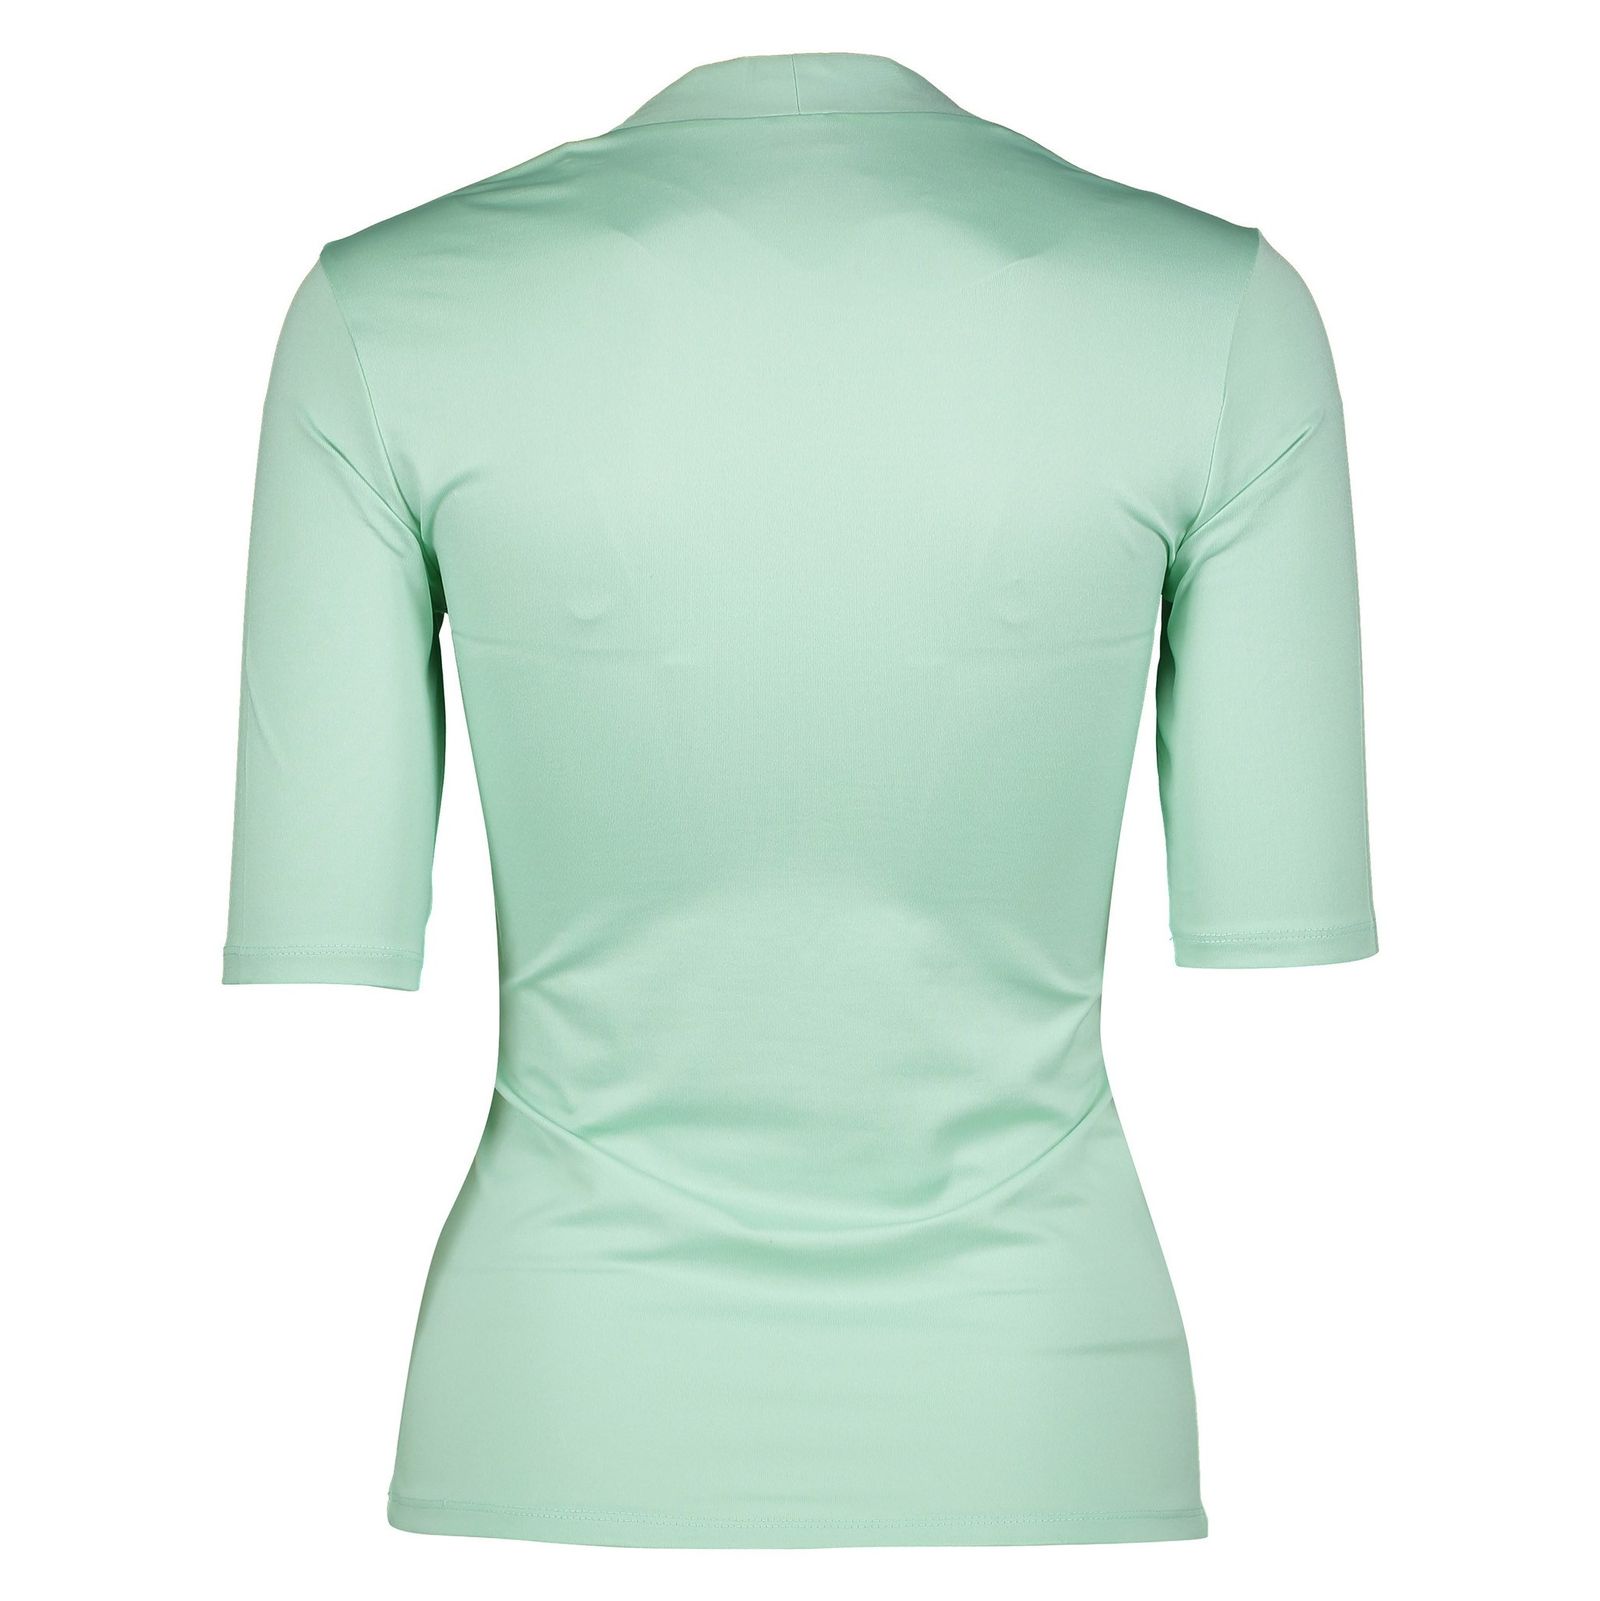 تی شرت یقه هفت زنانه - اس.اولیور - سبز آبي - 3